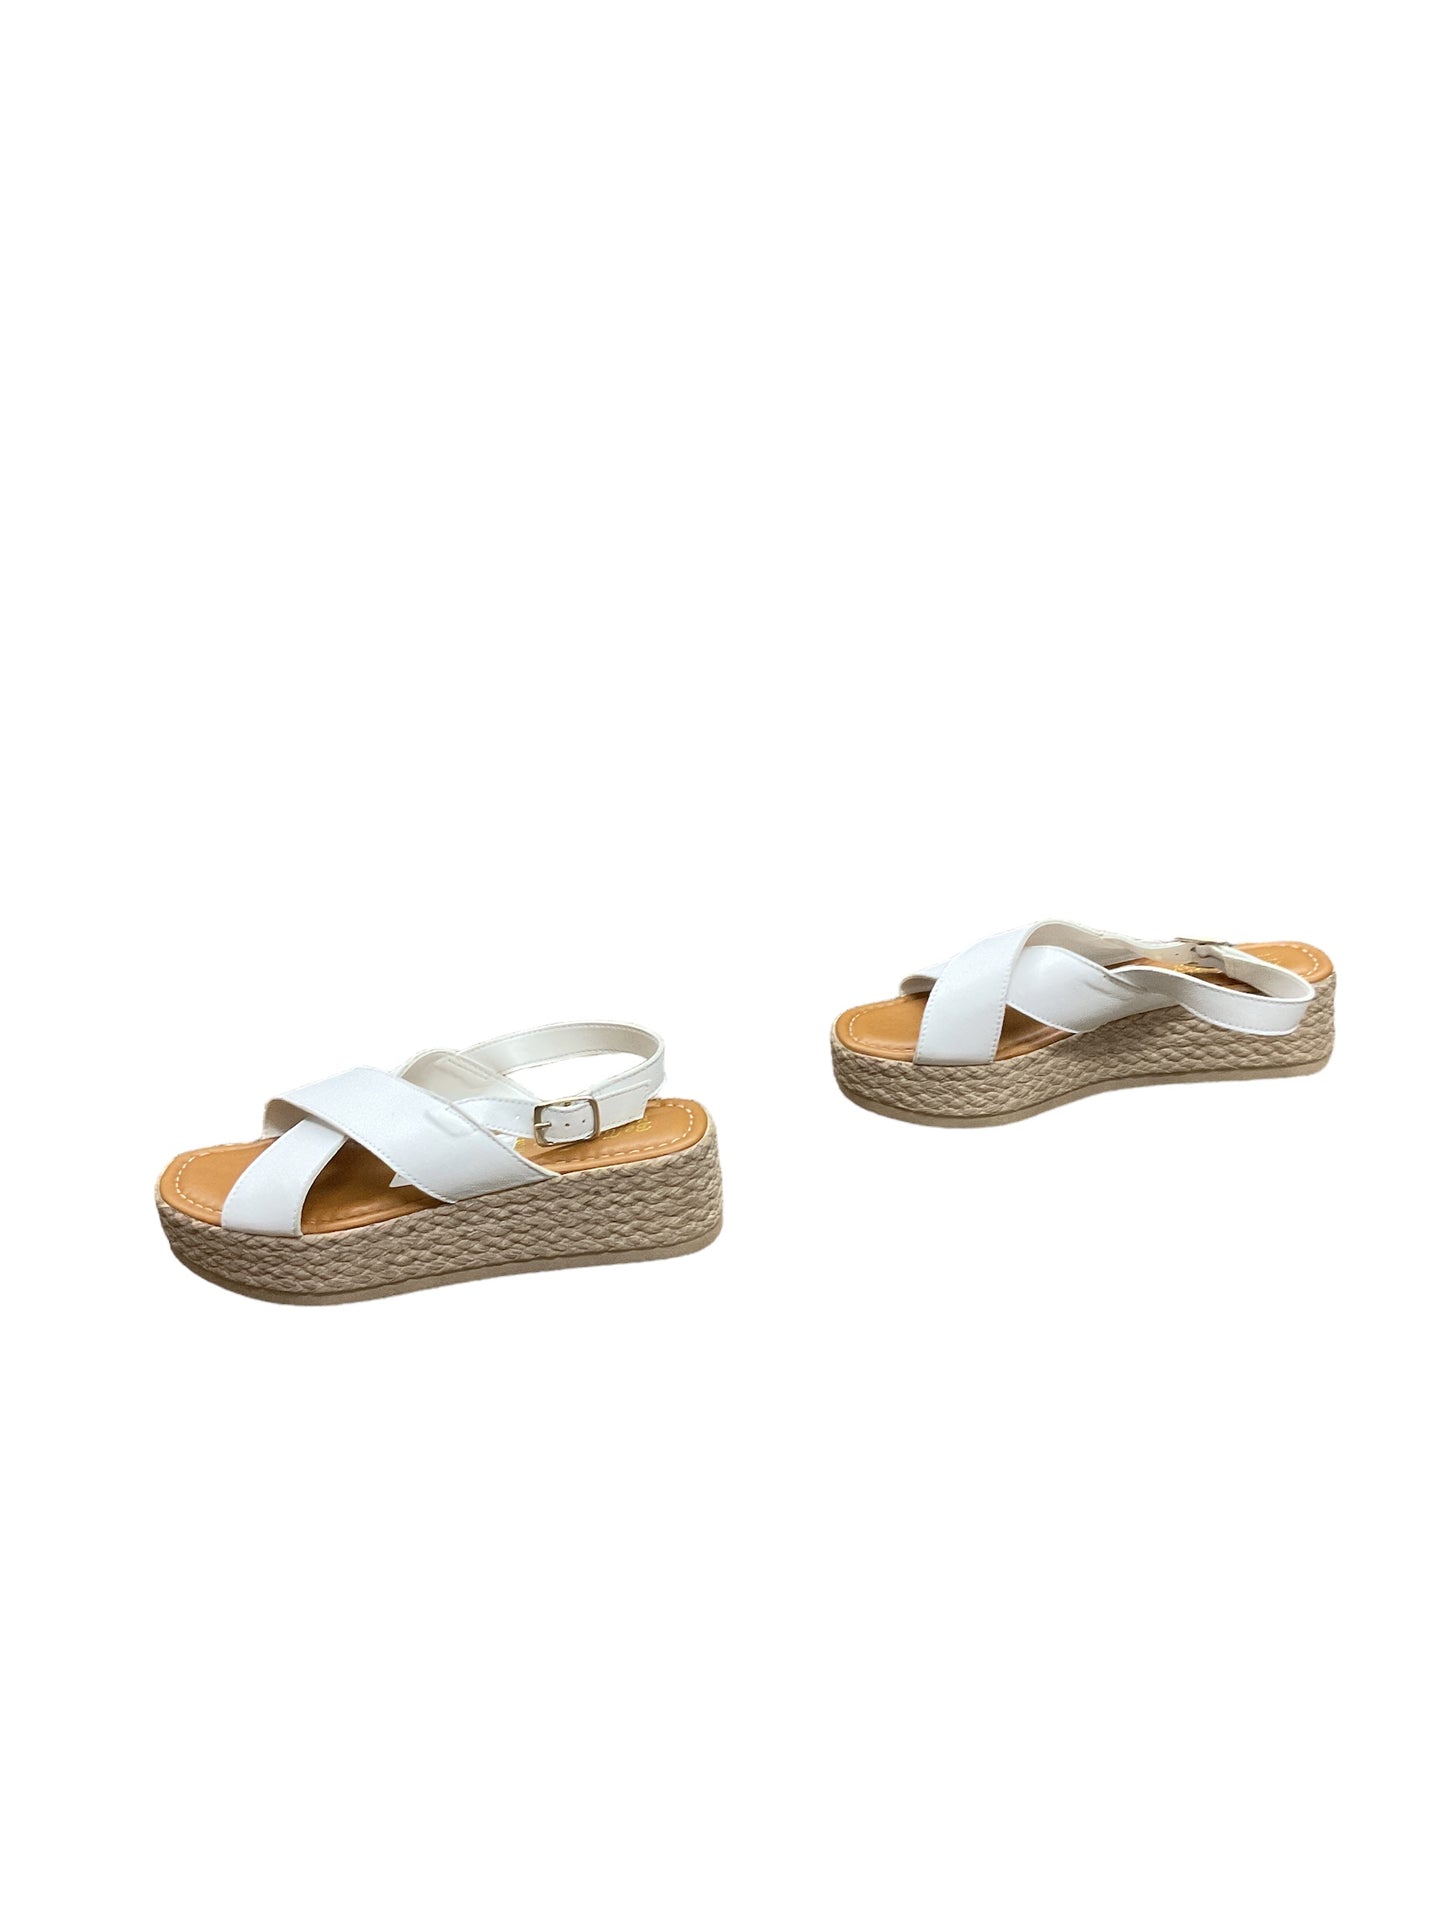 Sandals Heels Platform By Bella Vita Size: 8.5